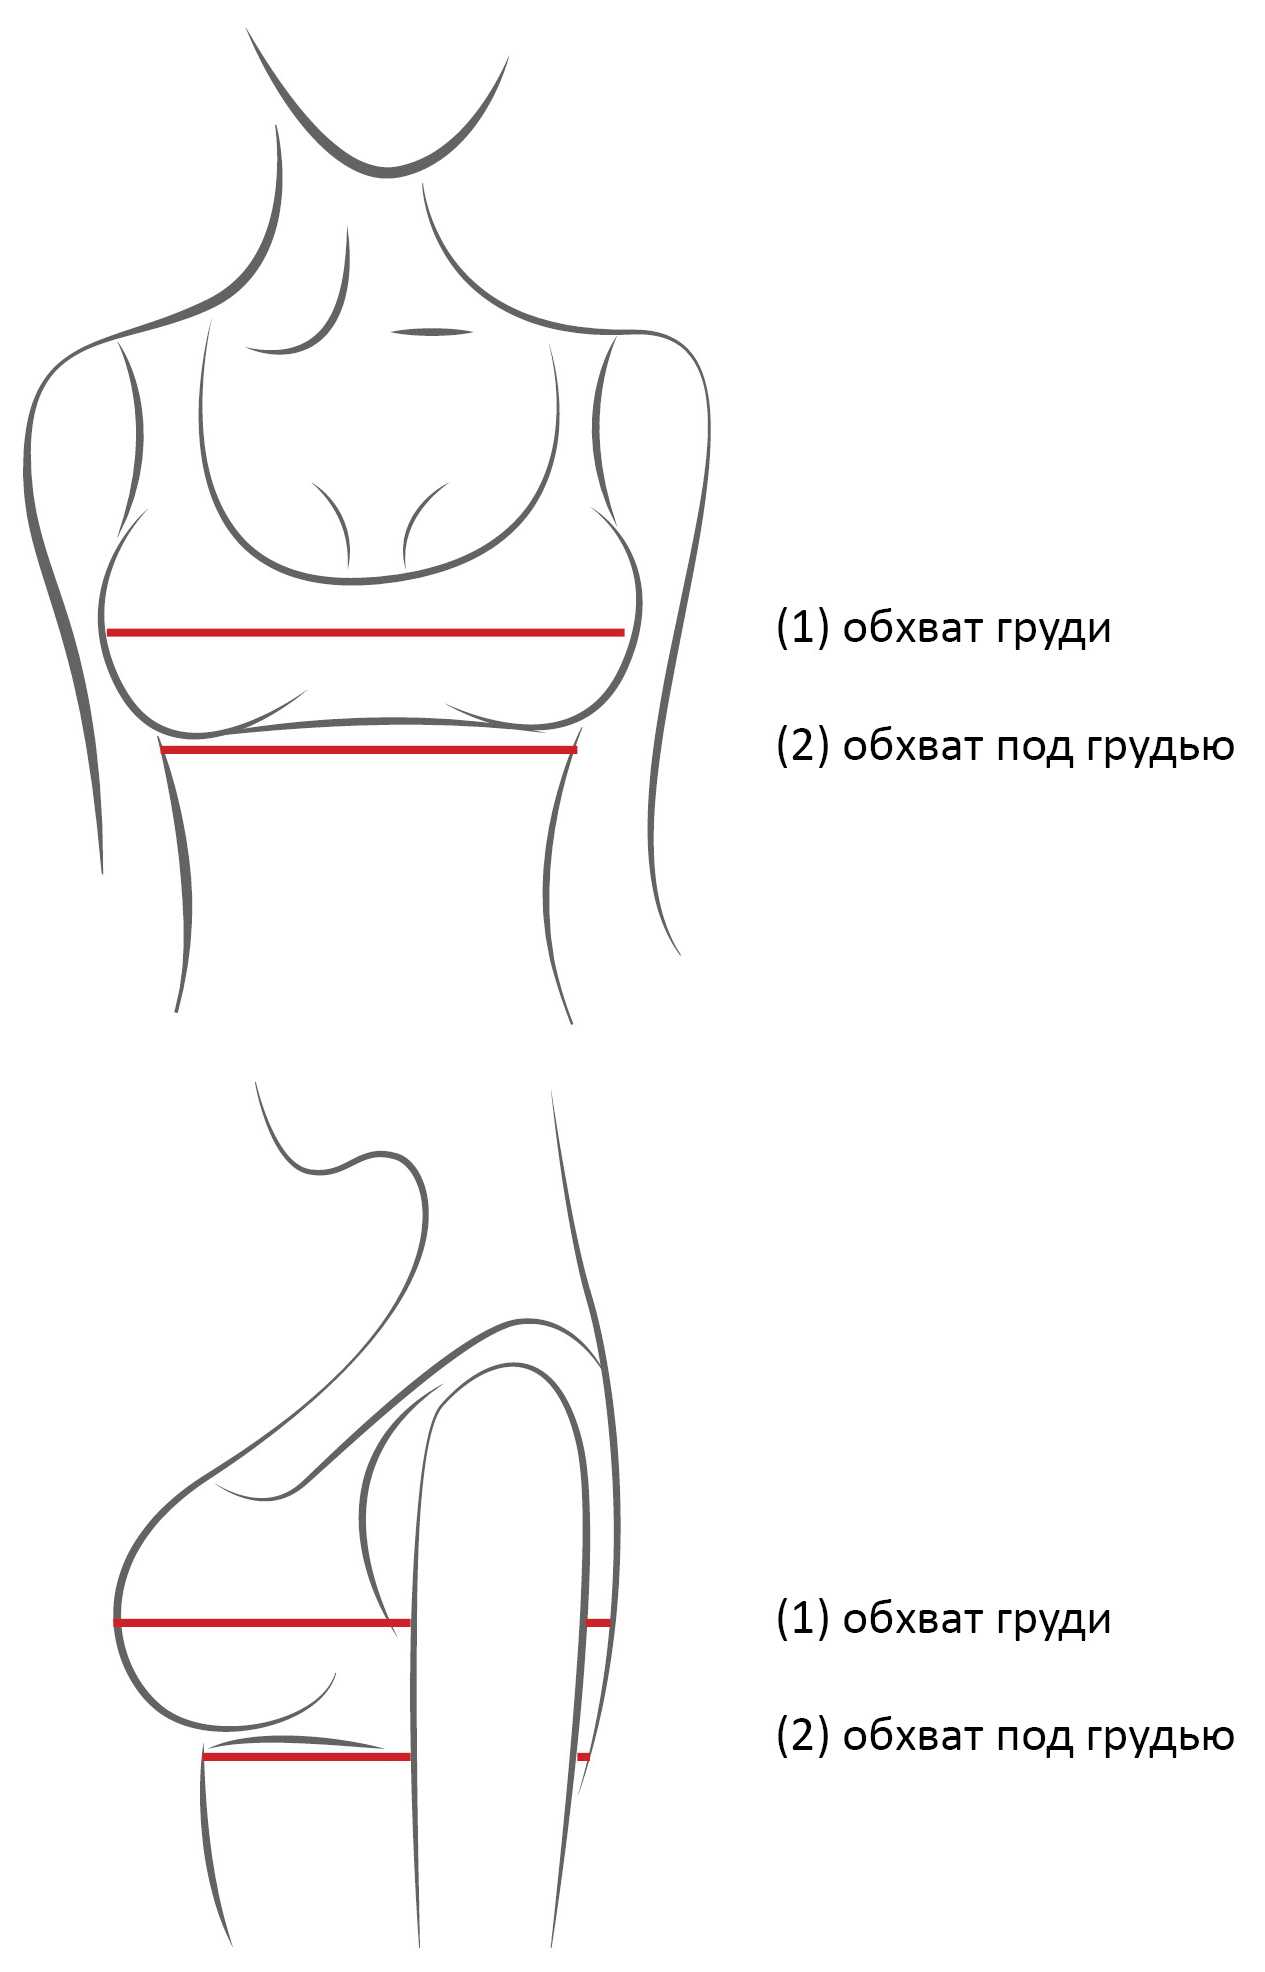 как измерить ширину груди у женщин фото 19